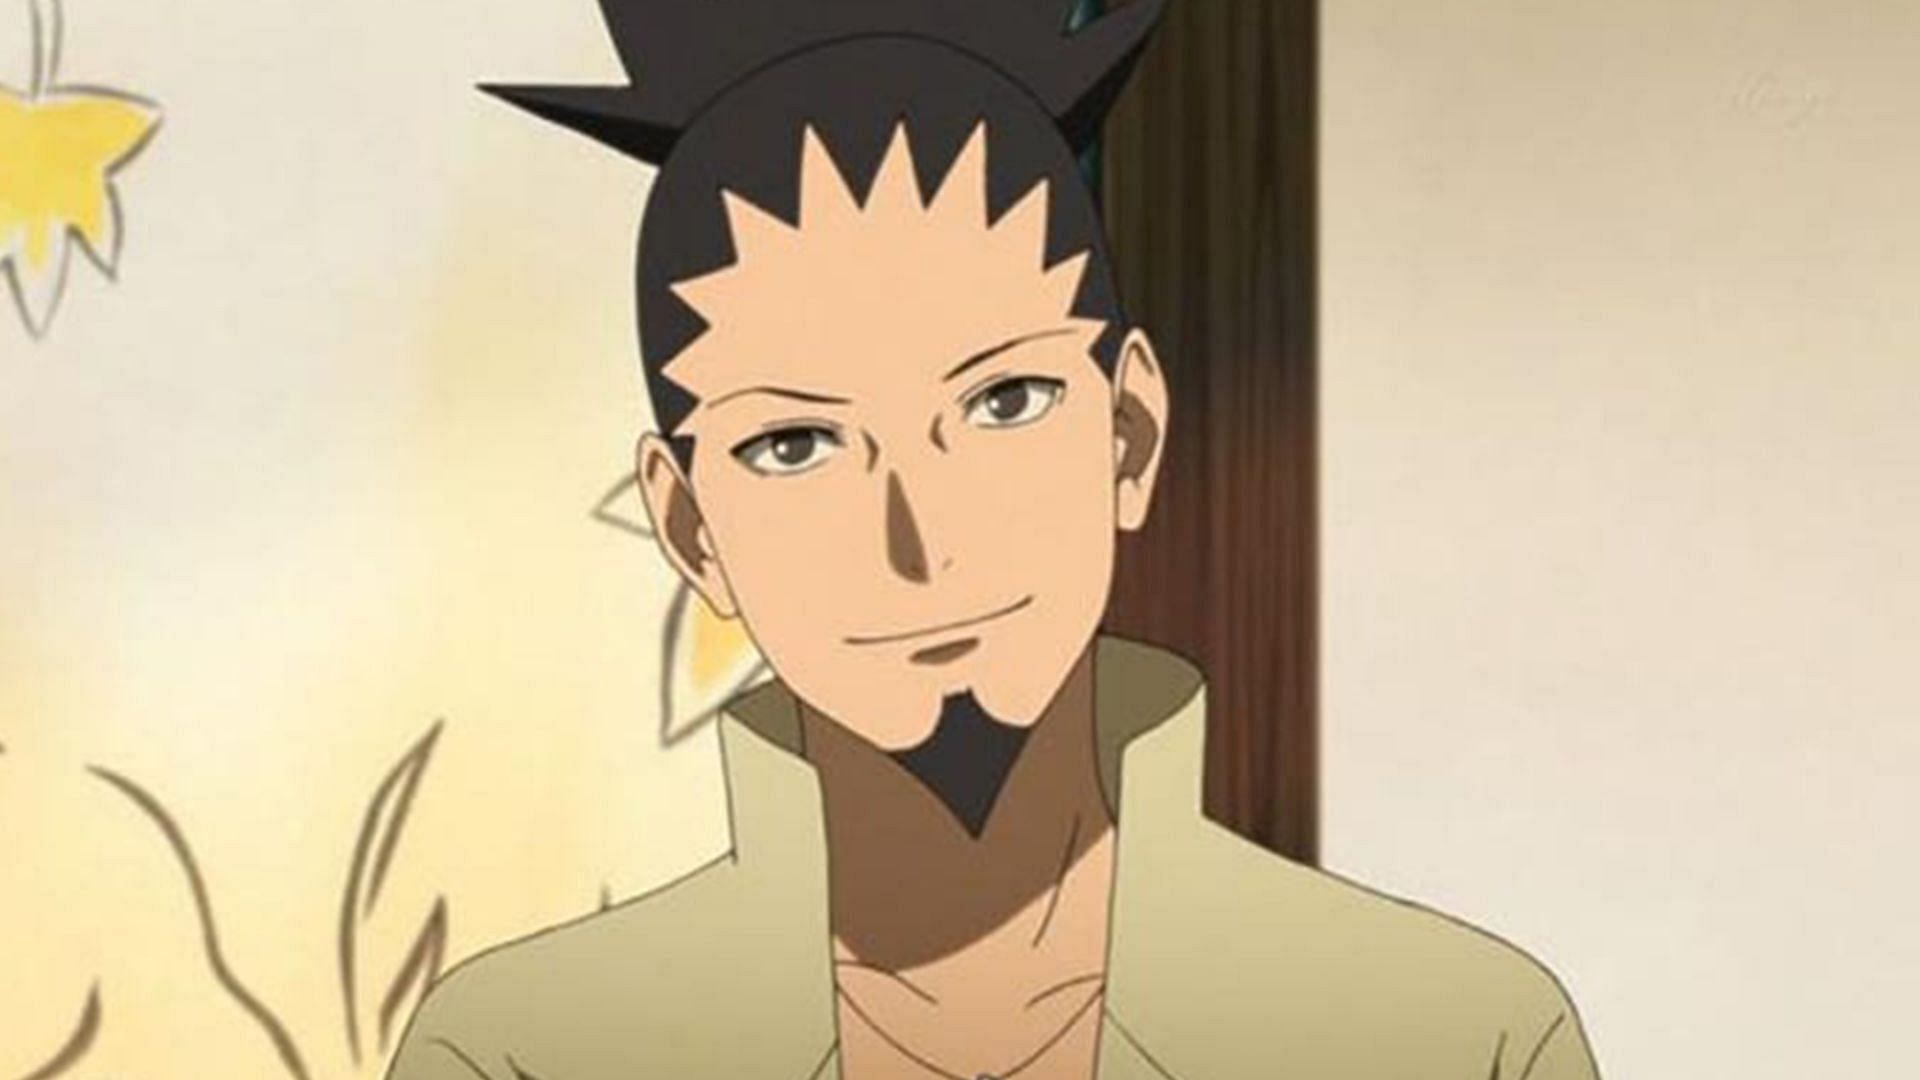 Shikamaru Nara, as seen in the anime Naruto (Image via Studio Pierrot)